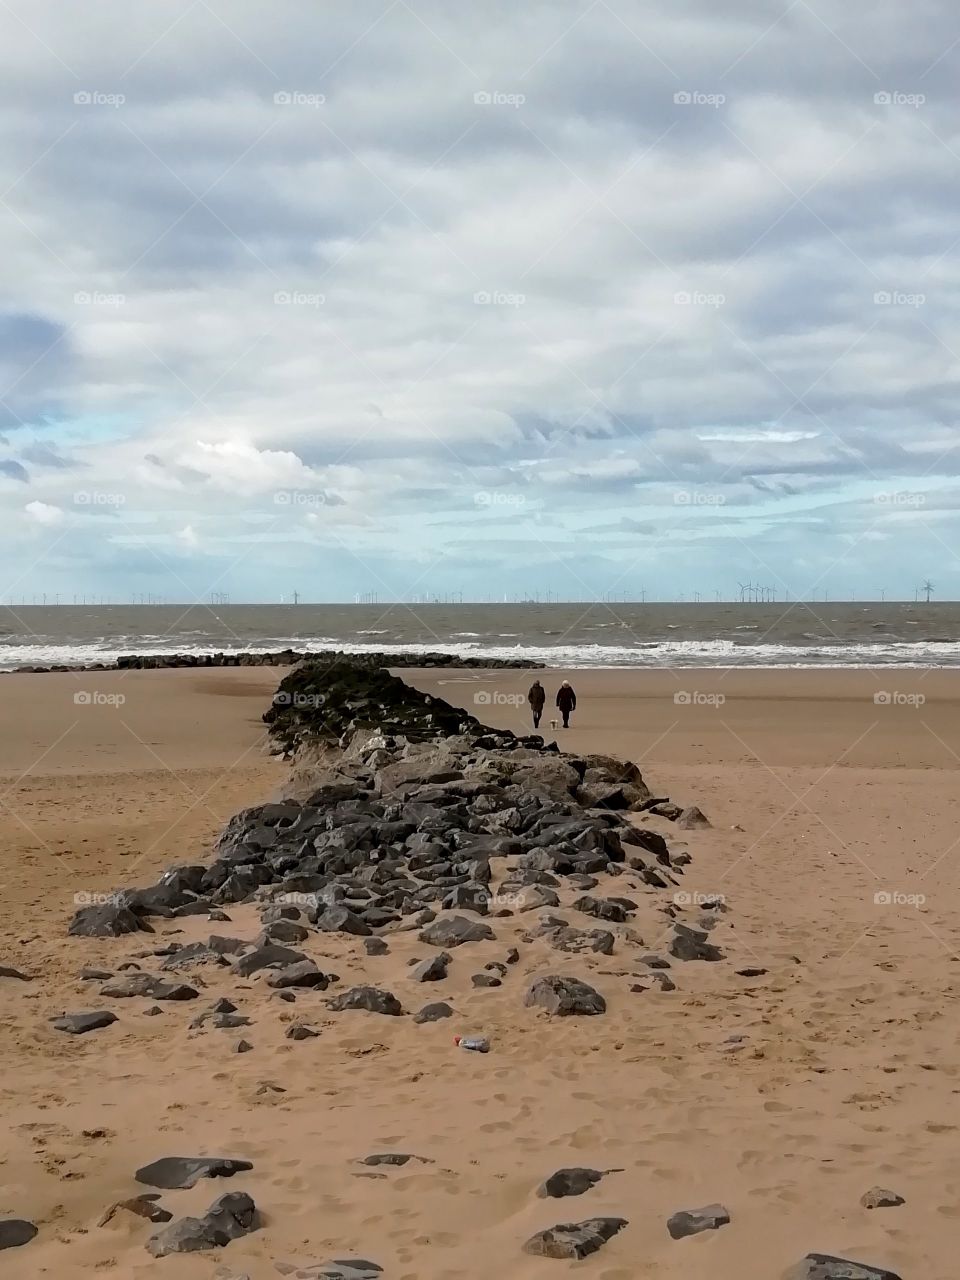 Rocks on a sandy beach against a cloudy sky